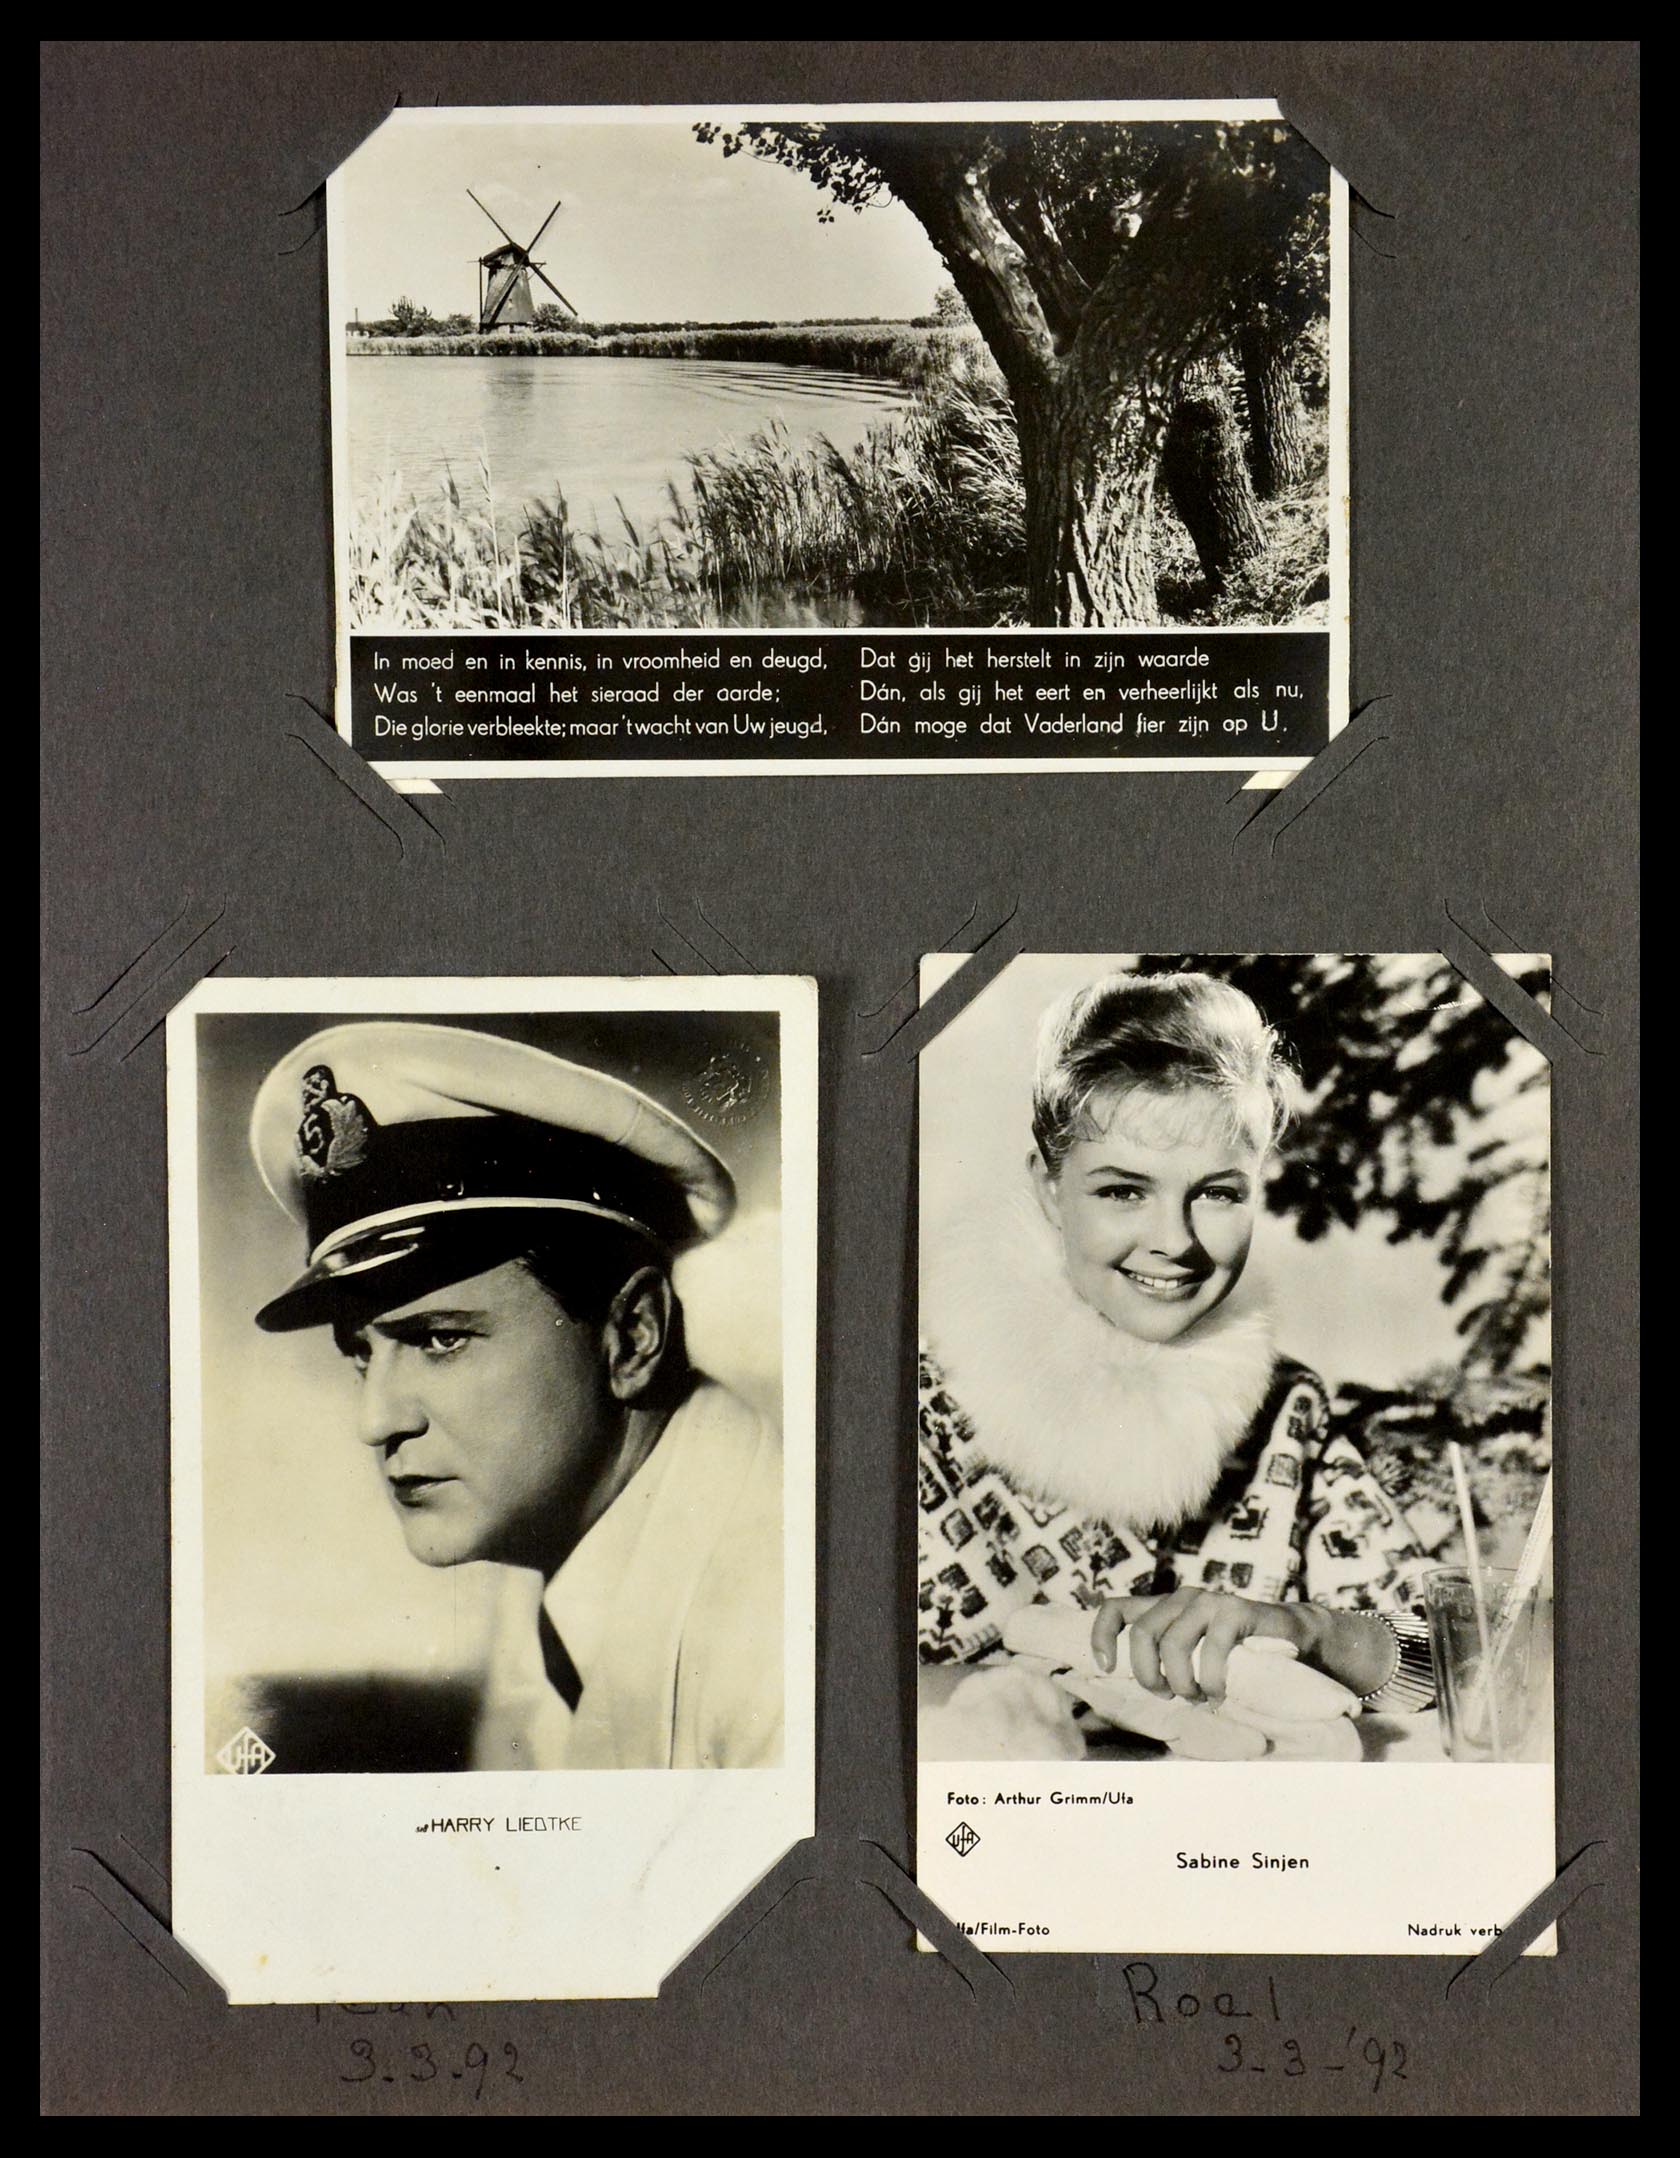 29518 012 - 29518 Nederland ansichtkaarten 1939-1940.